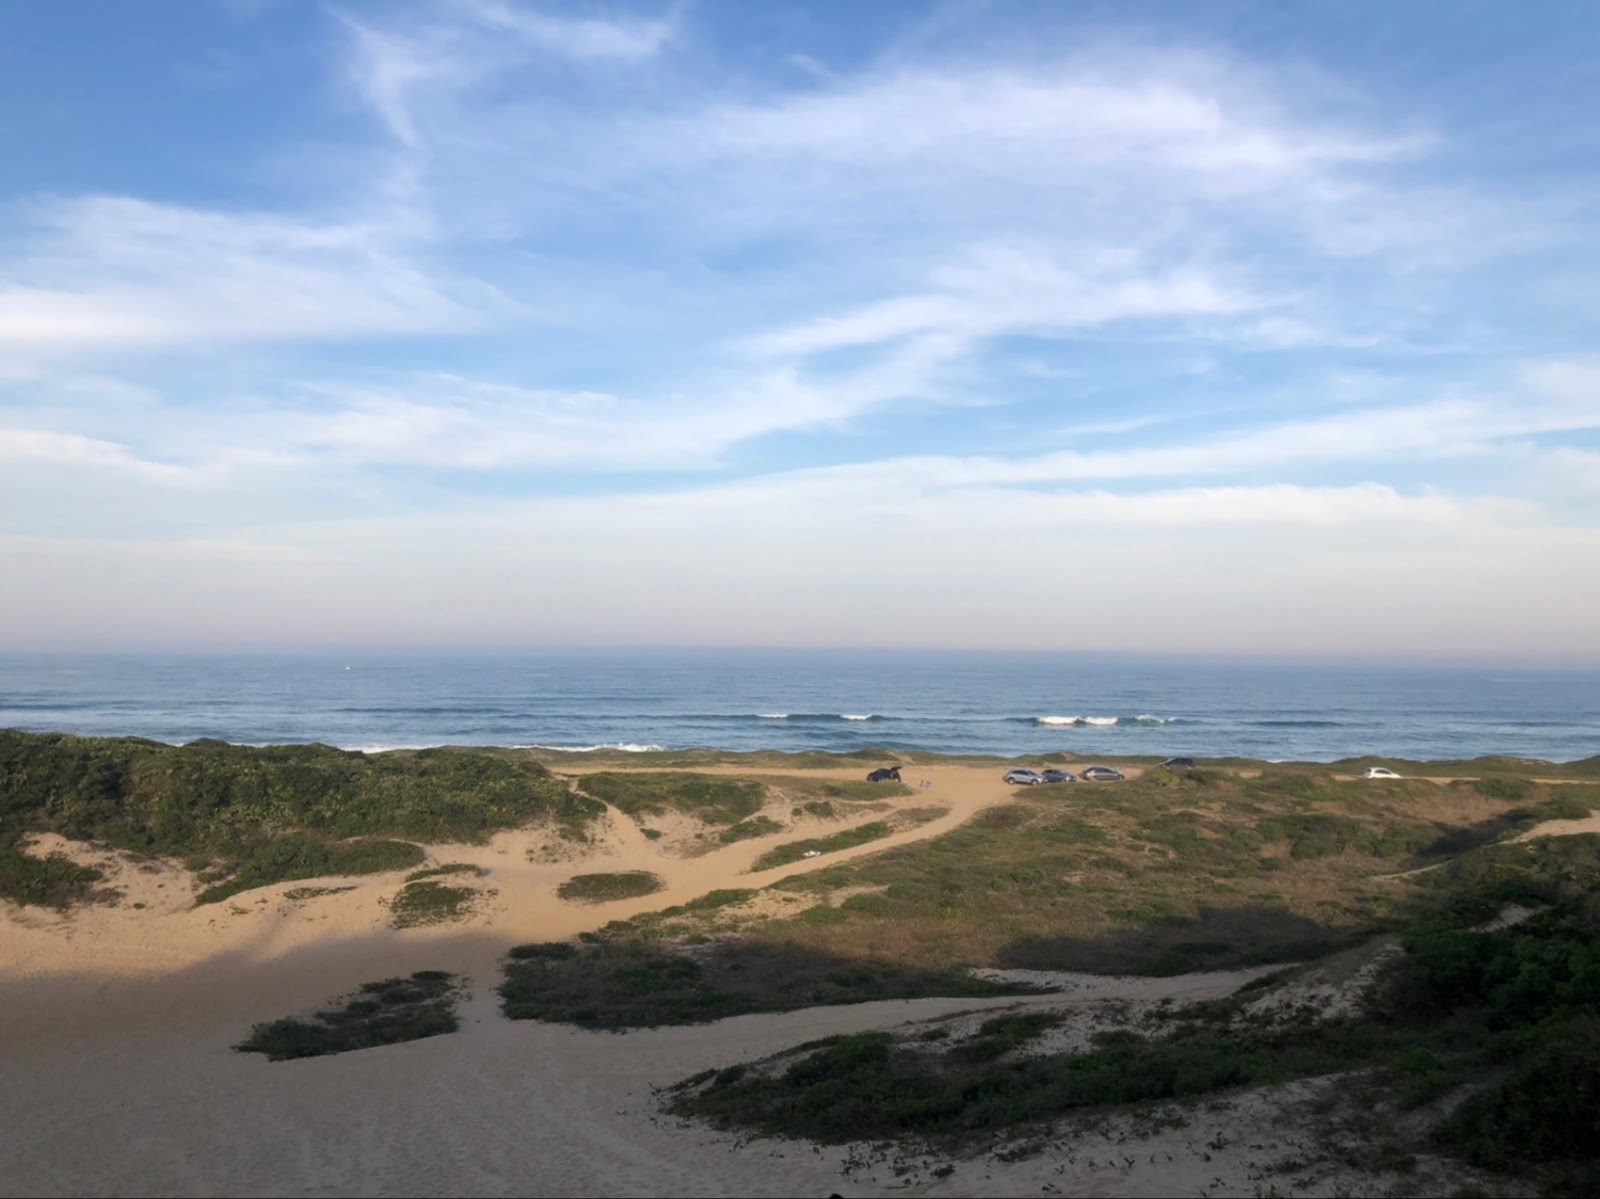 Fotografija Velika plaža nahaja se v naravnem okolju